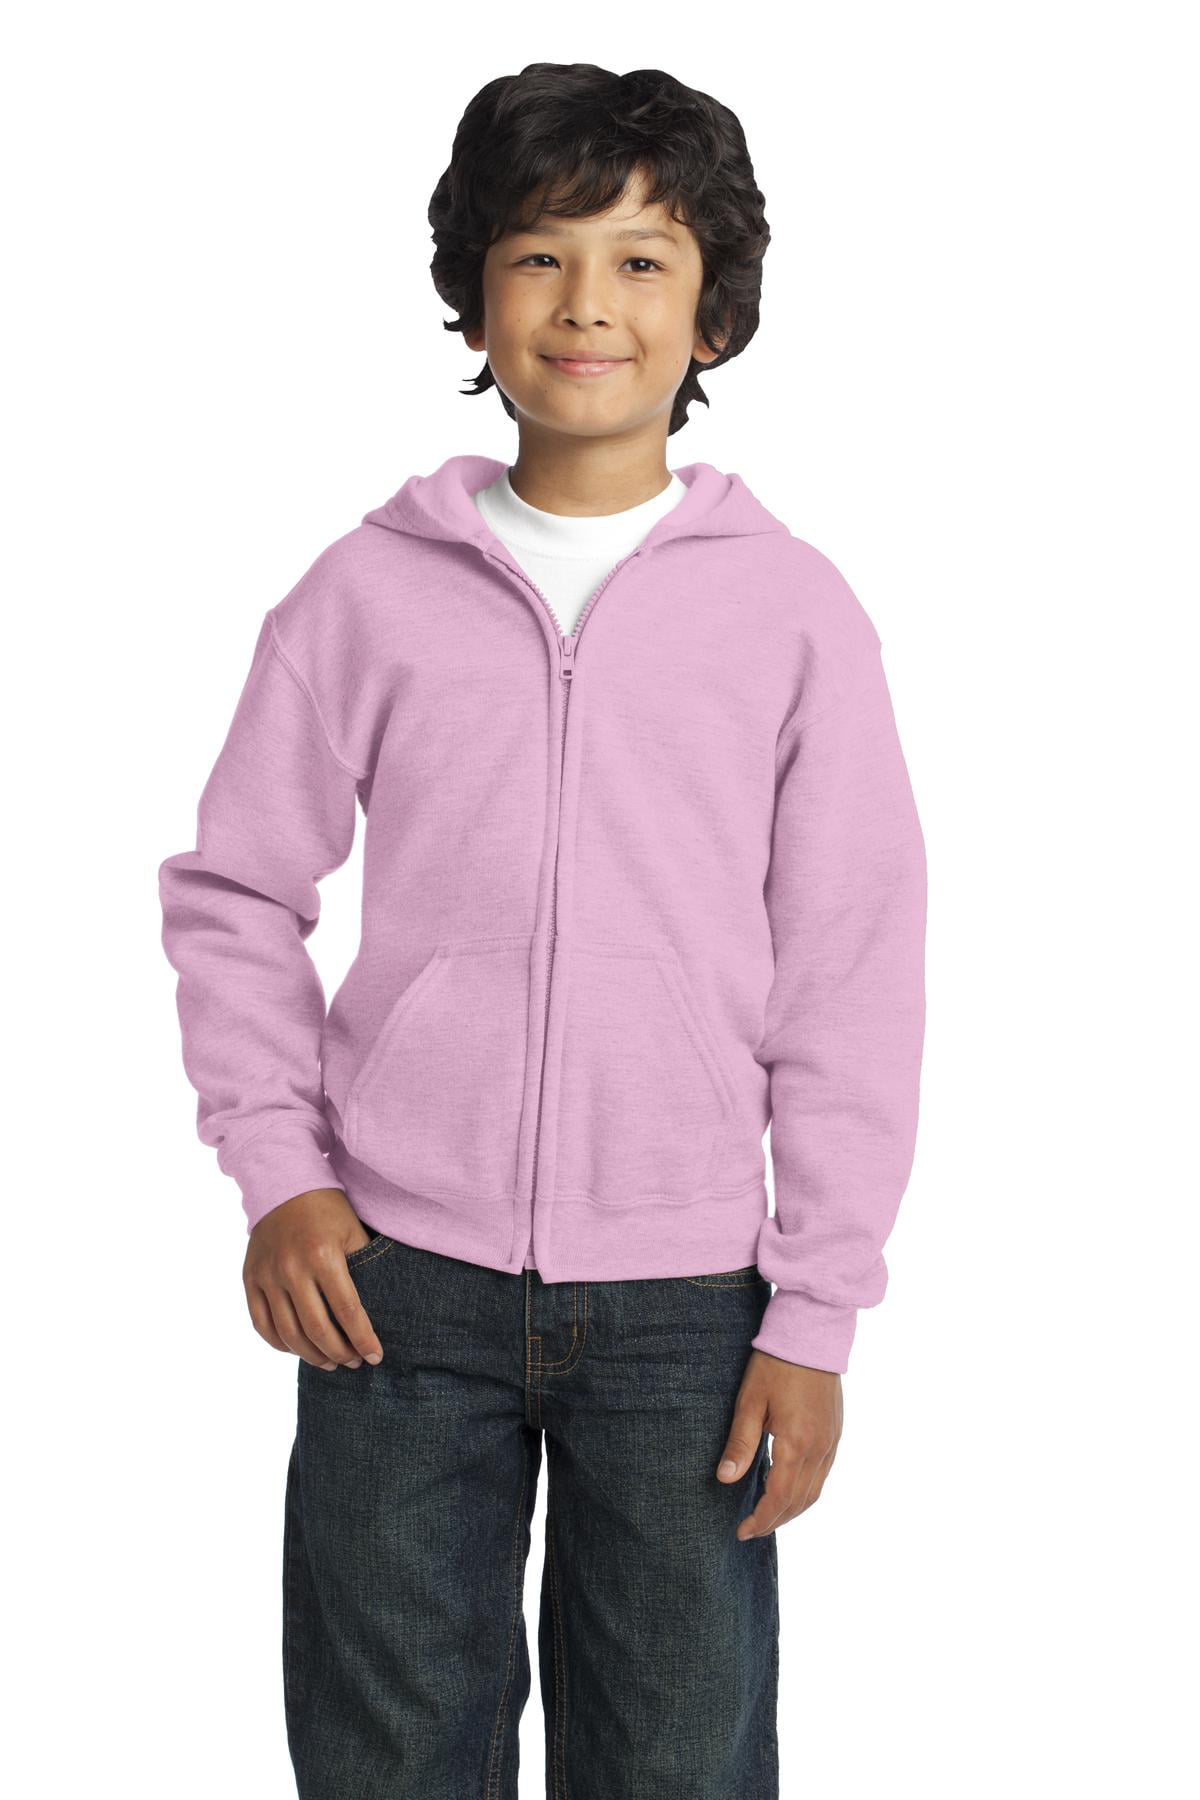 Gildan Boys Long Sleeve Full-Zip Hooded Sweatshirt. 18600B - Walmart.com